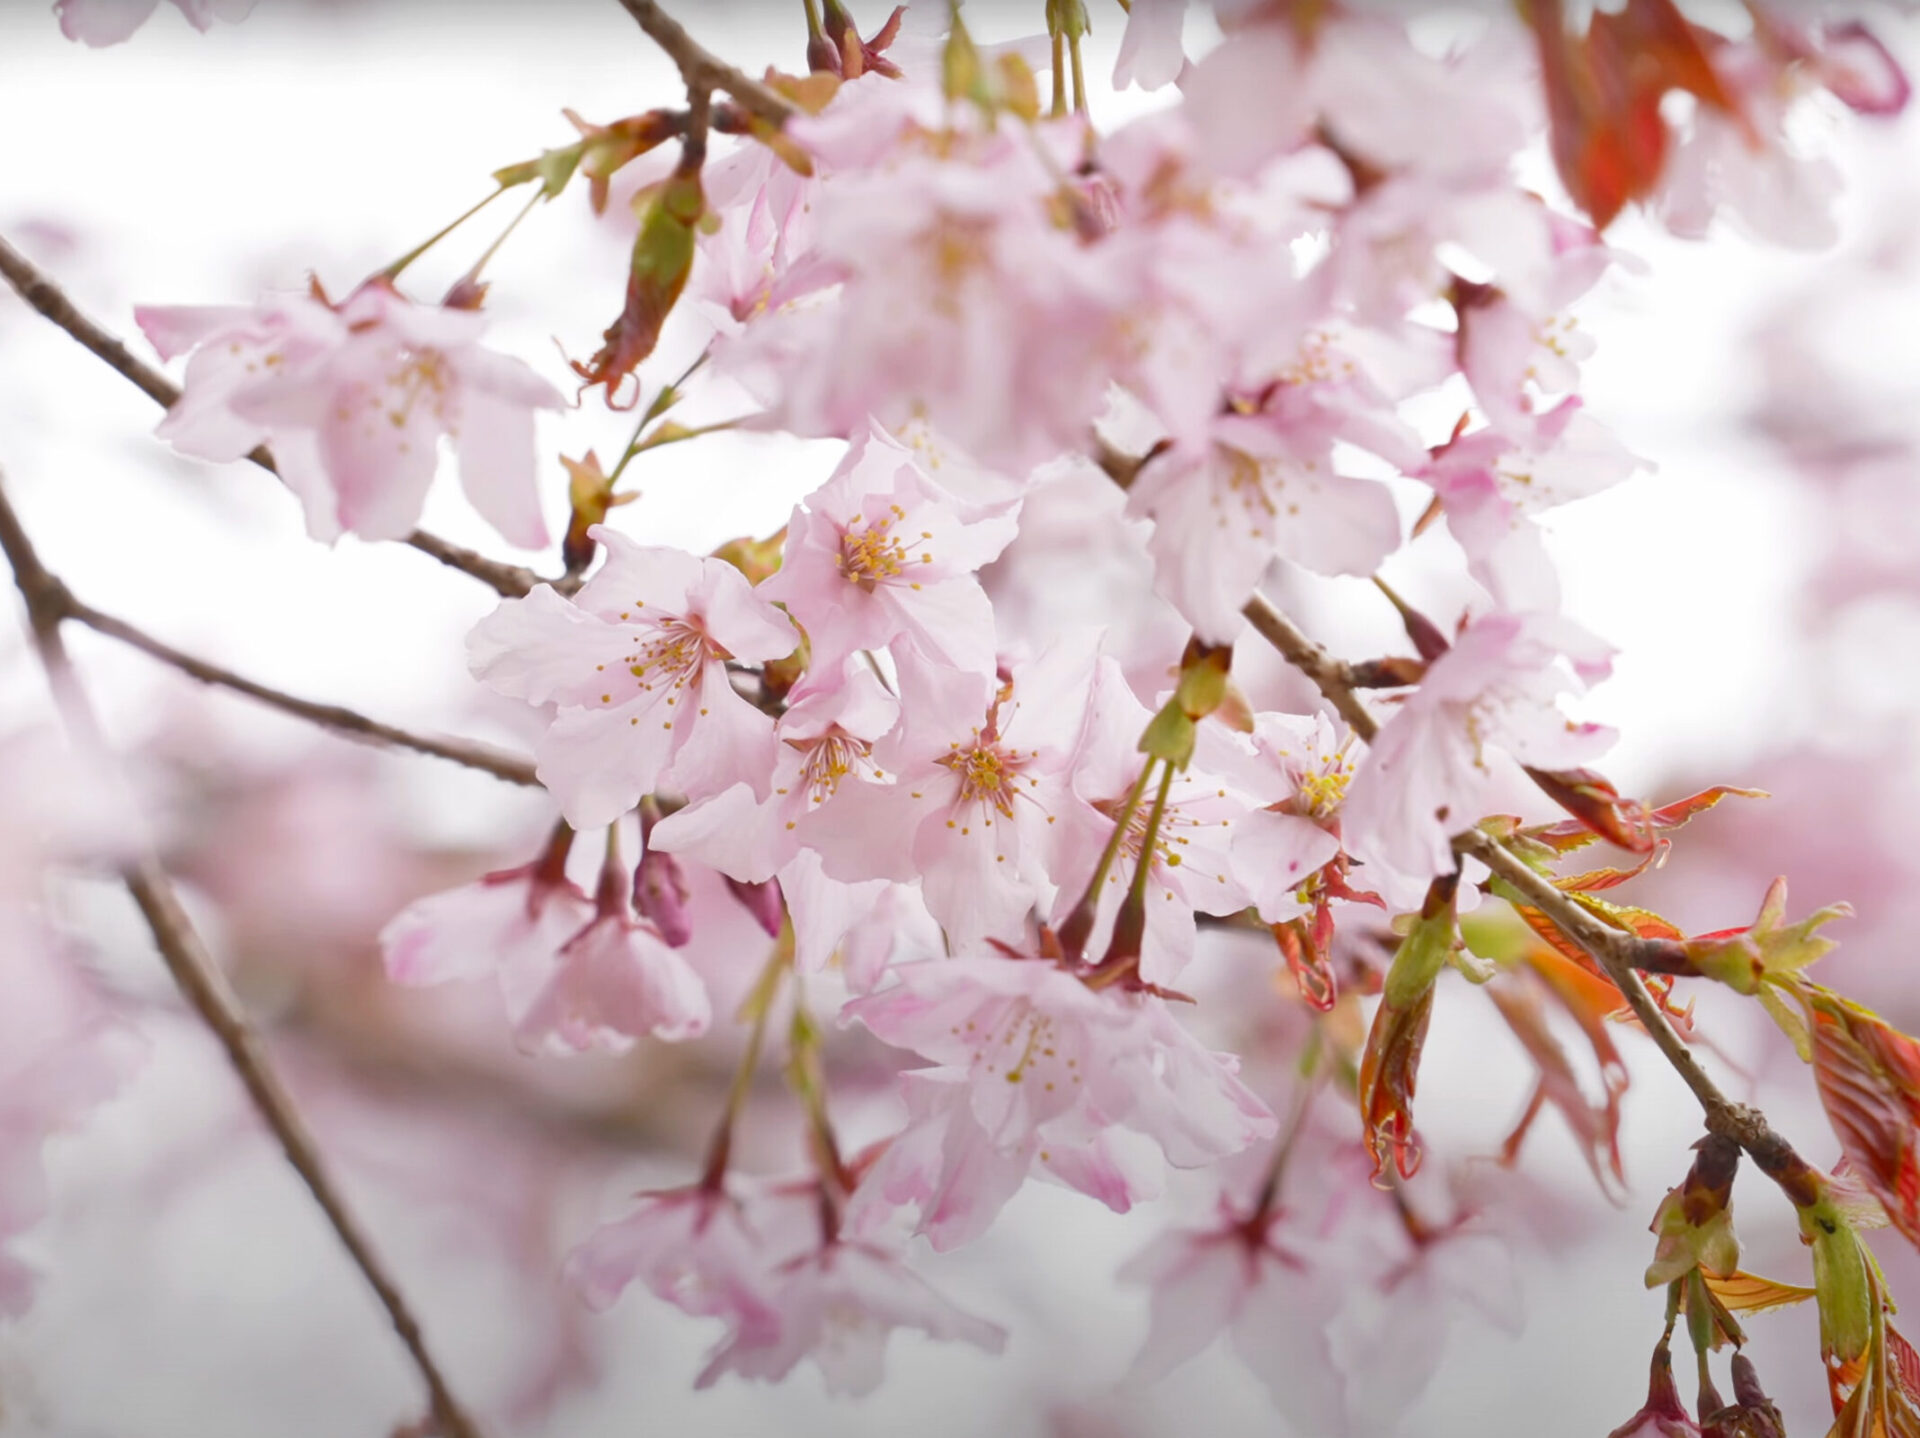 熊野の桜 − クマノザクラ